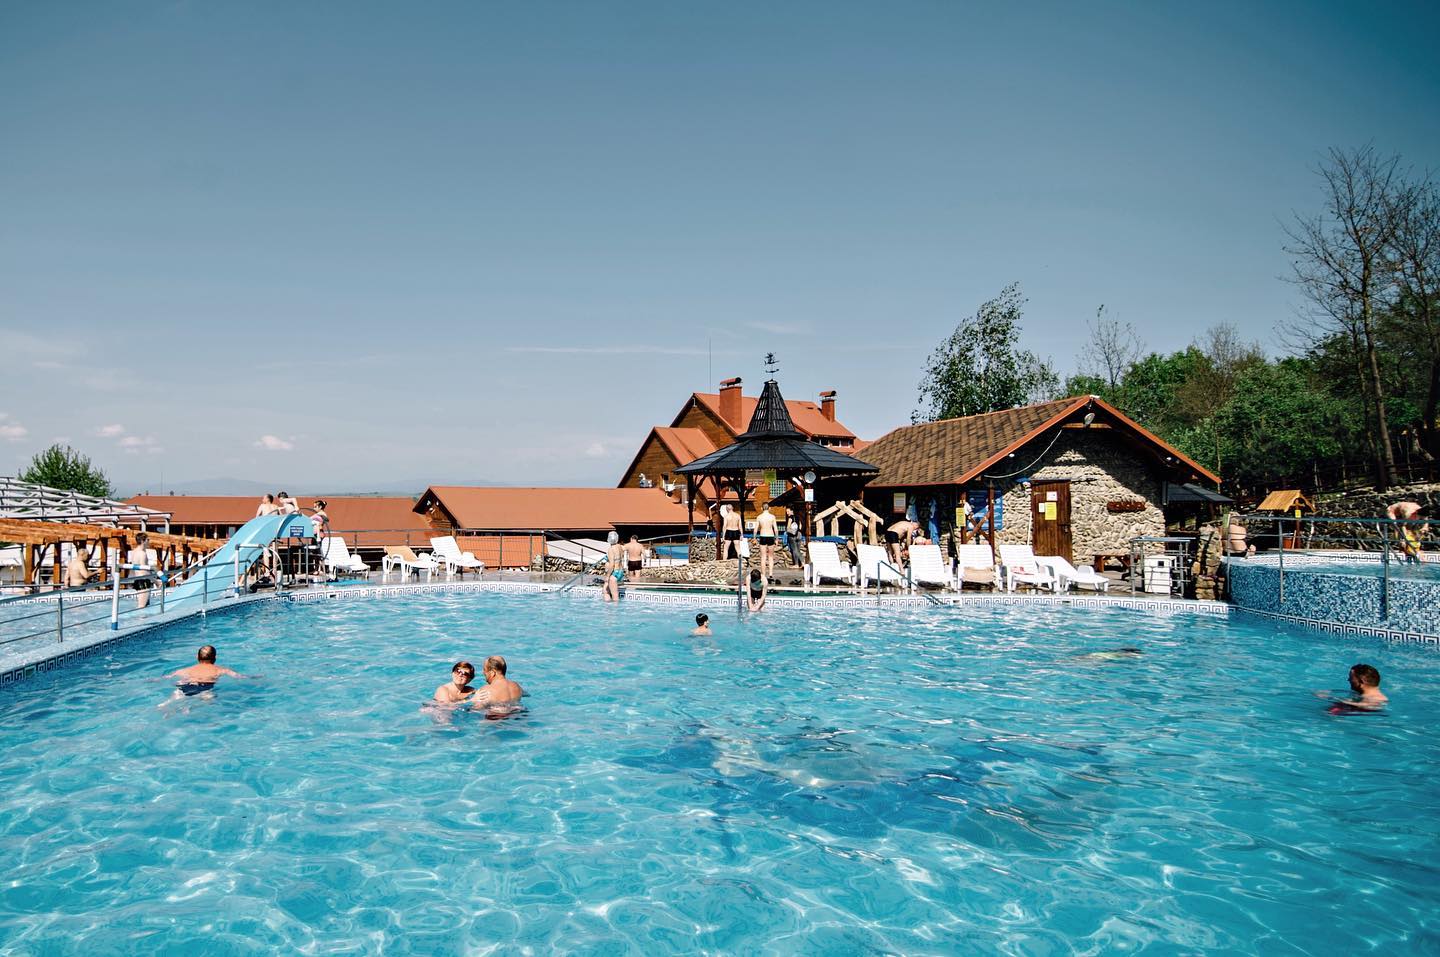 Термальные воды Велятин цены - 2022, термальный комплекс "Теплые воды", это популярное место отдыха с бассейнами, цены на купание от 150 грн с человека.